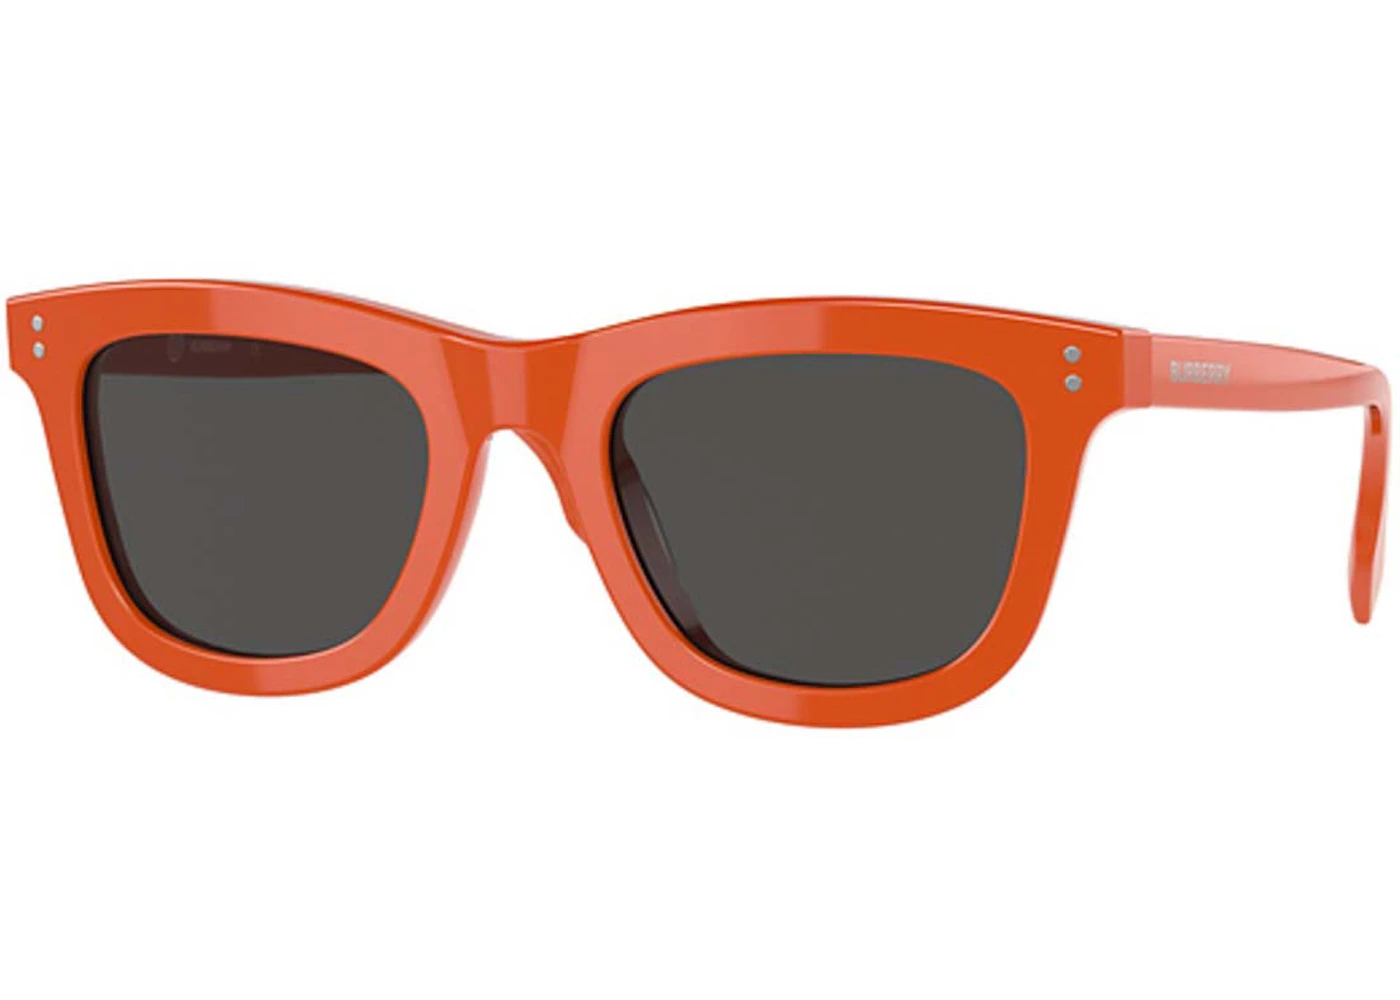 Burberry Sunglasses Orange (40821741) in Acetate - GB